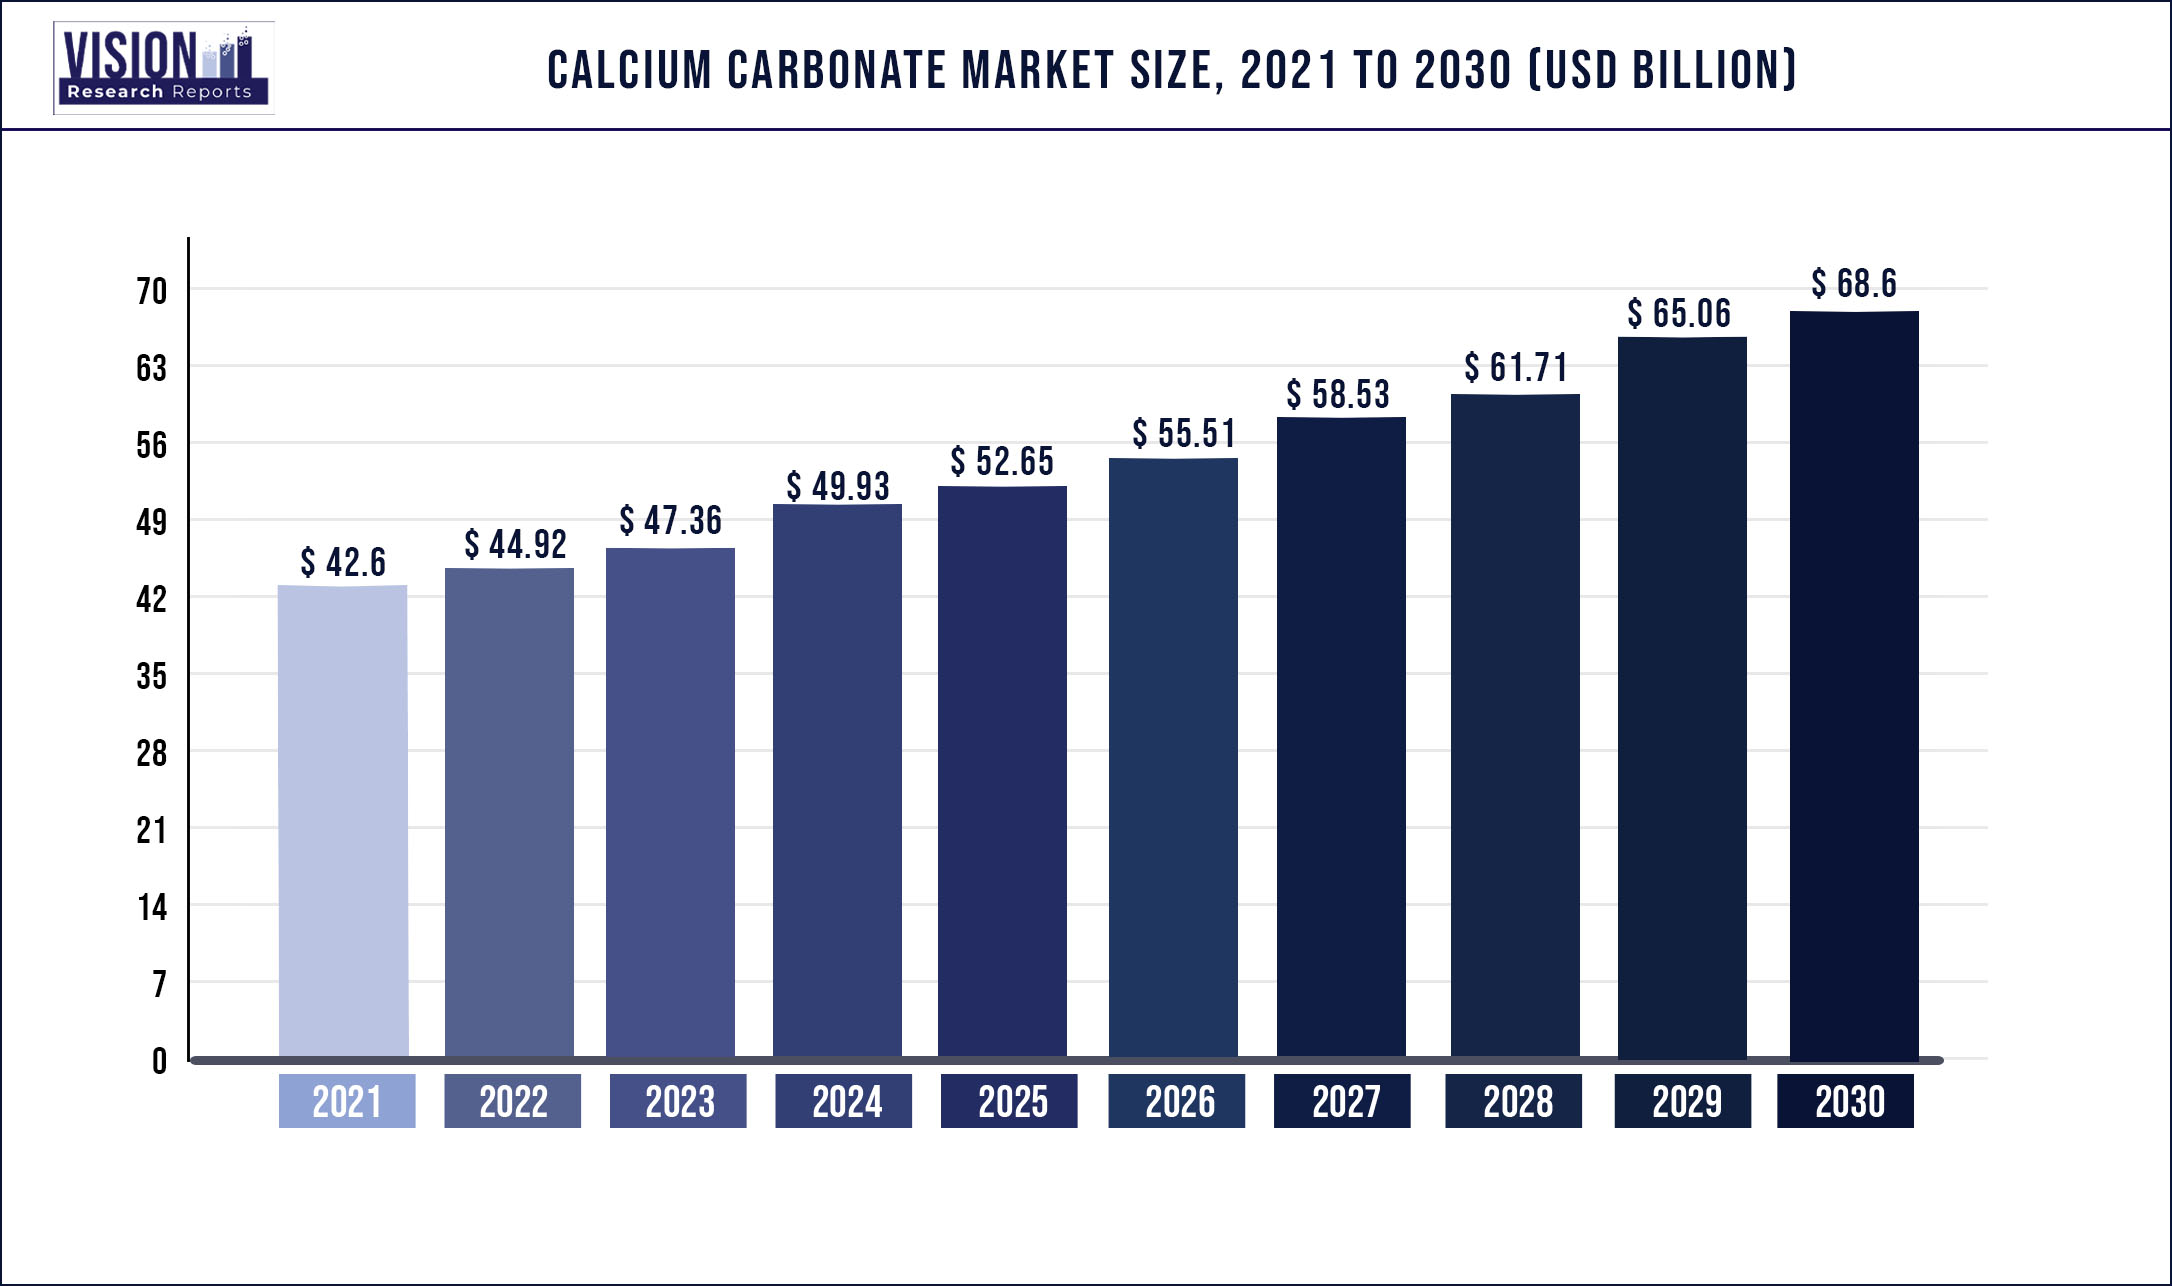 Calcium Carbonate Market Size 2021 to 2030